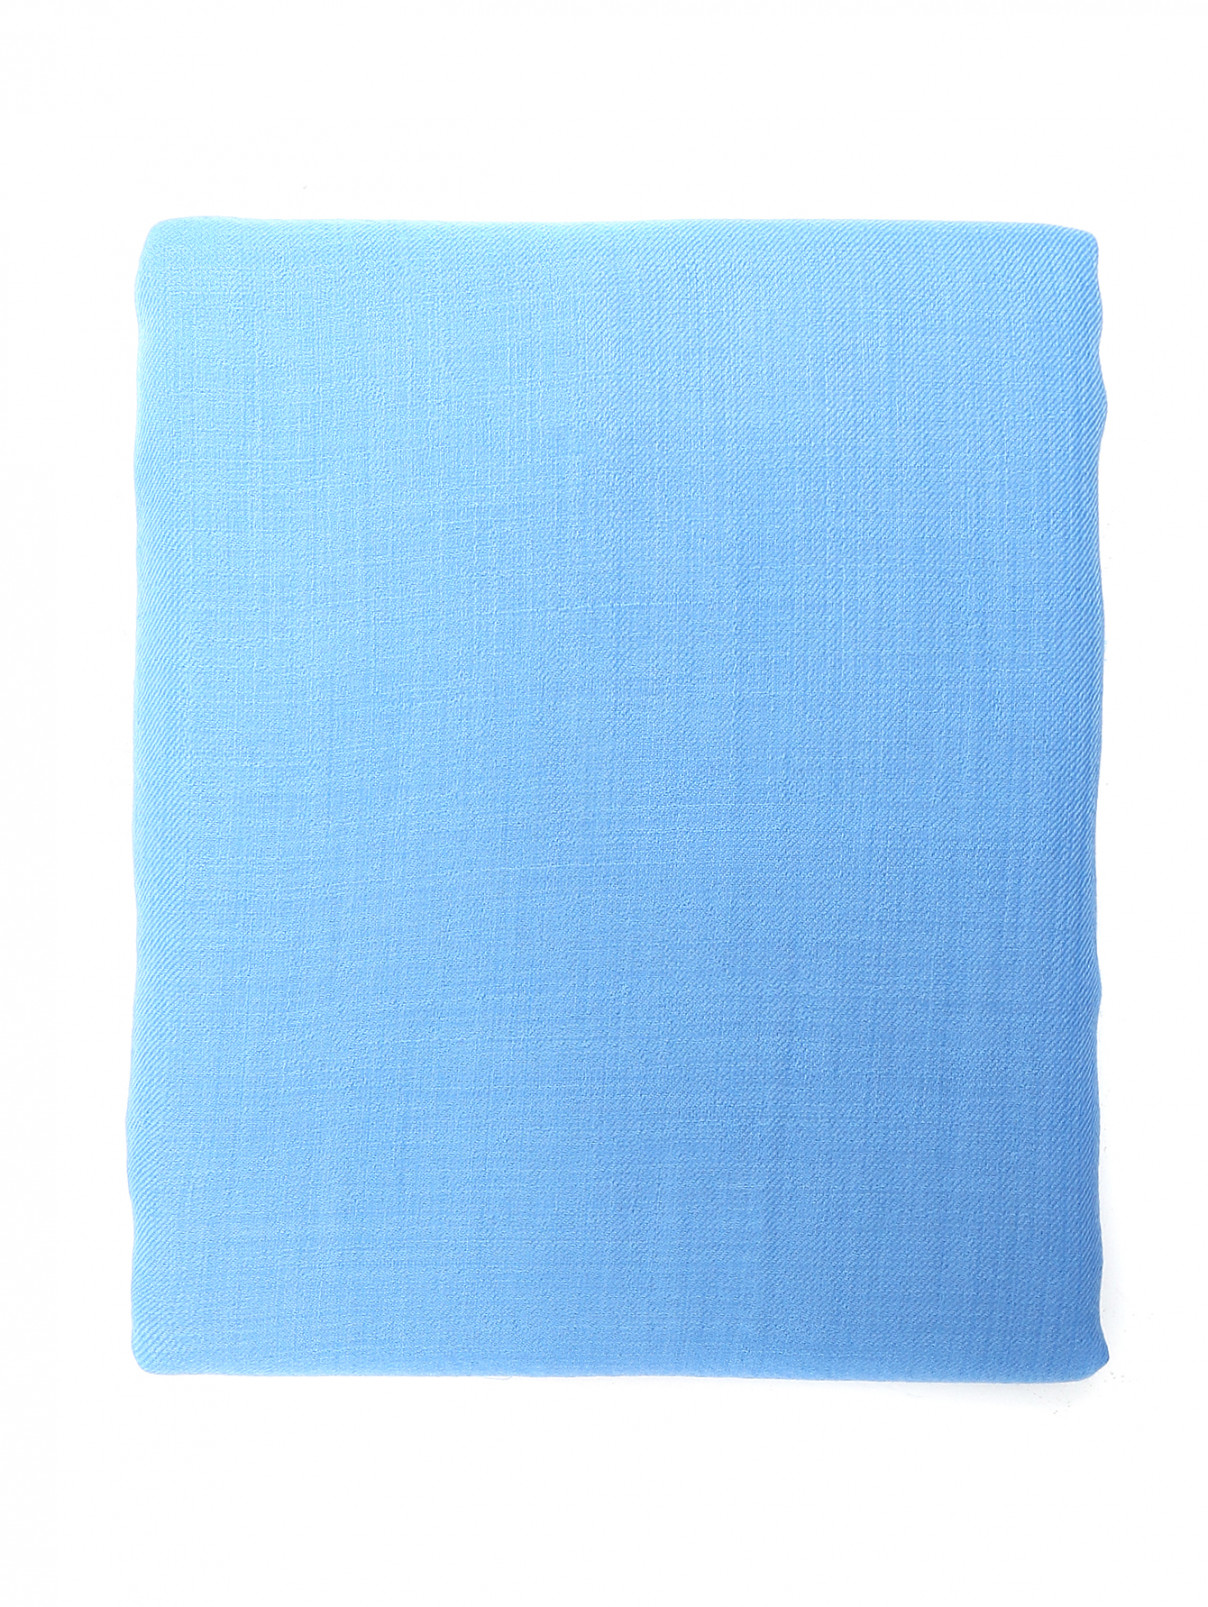 Однотонный шарф из кашемира Begg x Co  –  Общий вид  – Цвет:  Синий